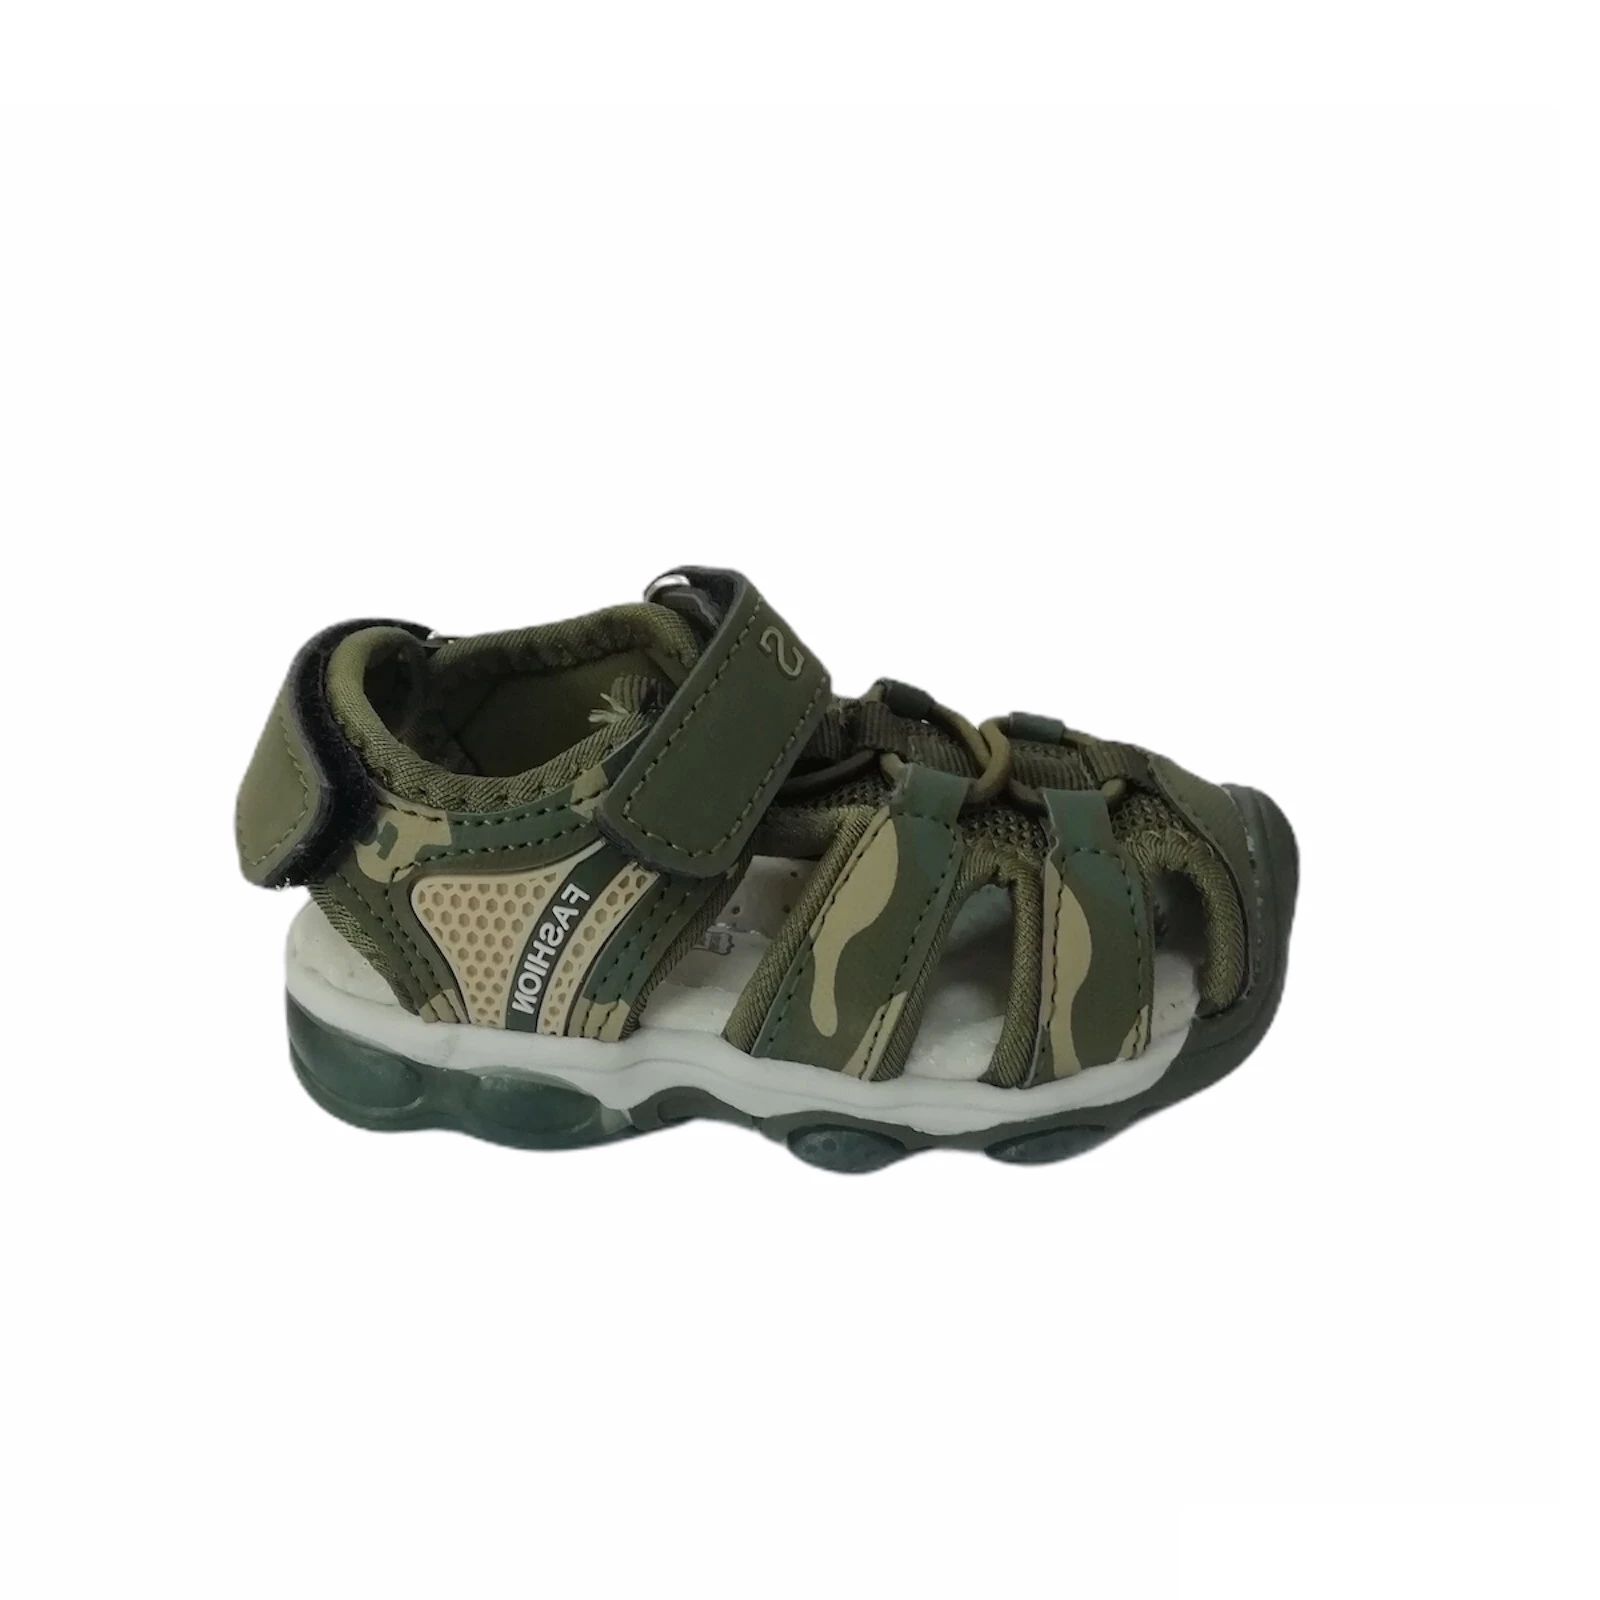  Sandale za dečaka green X8108 - udobne sandale za dečake